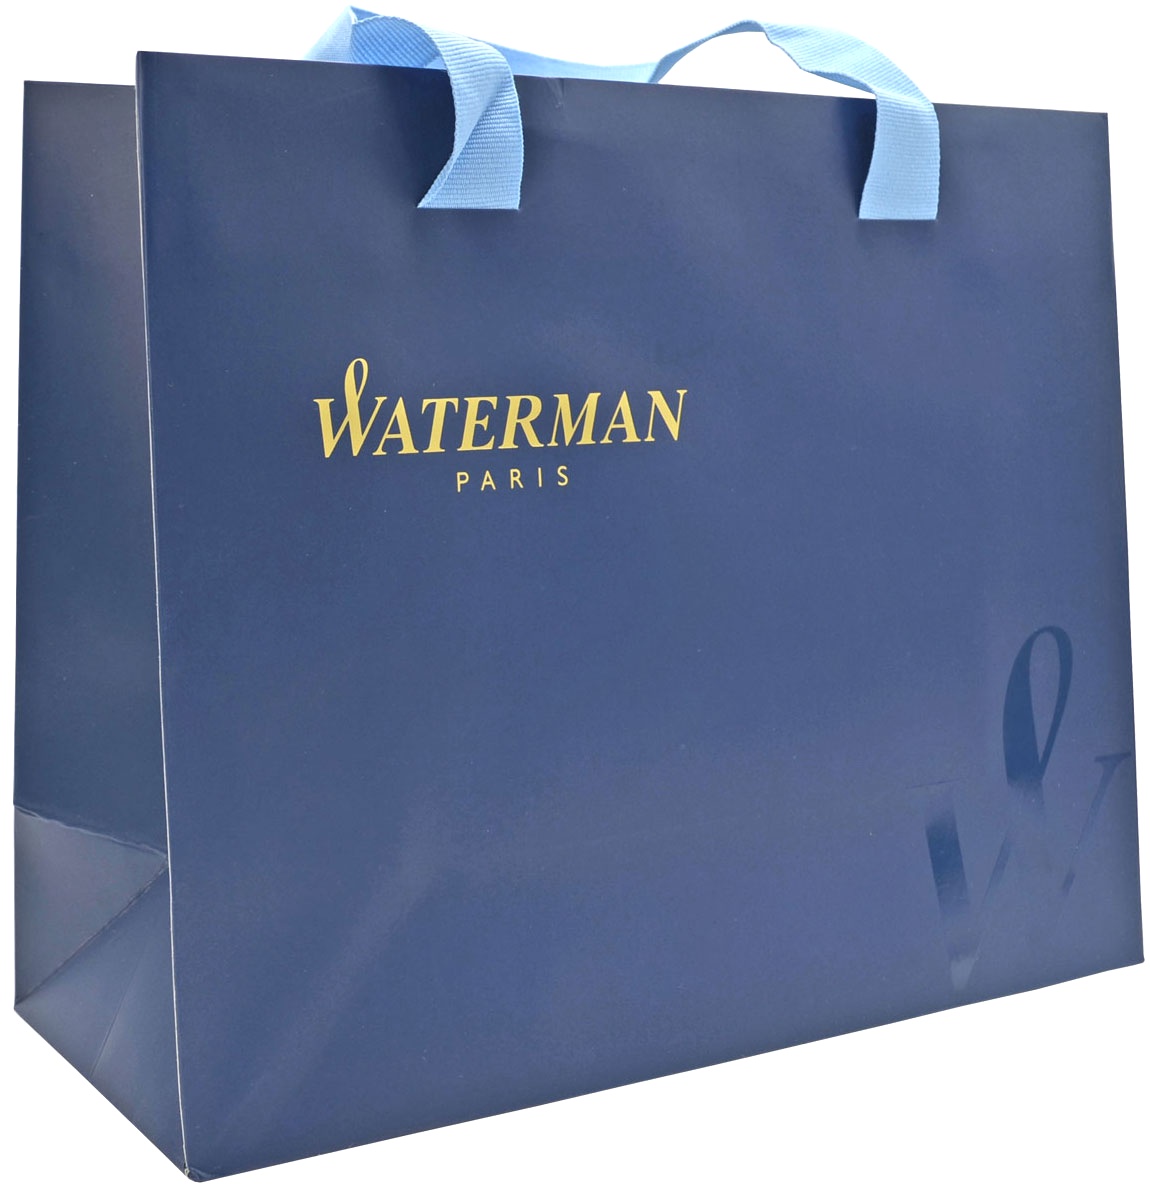  Фирменный подарочный пакет WATERMAN, Большой, бумажный, синий, 29*26*10 см.